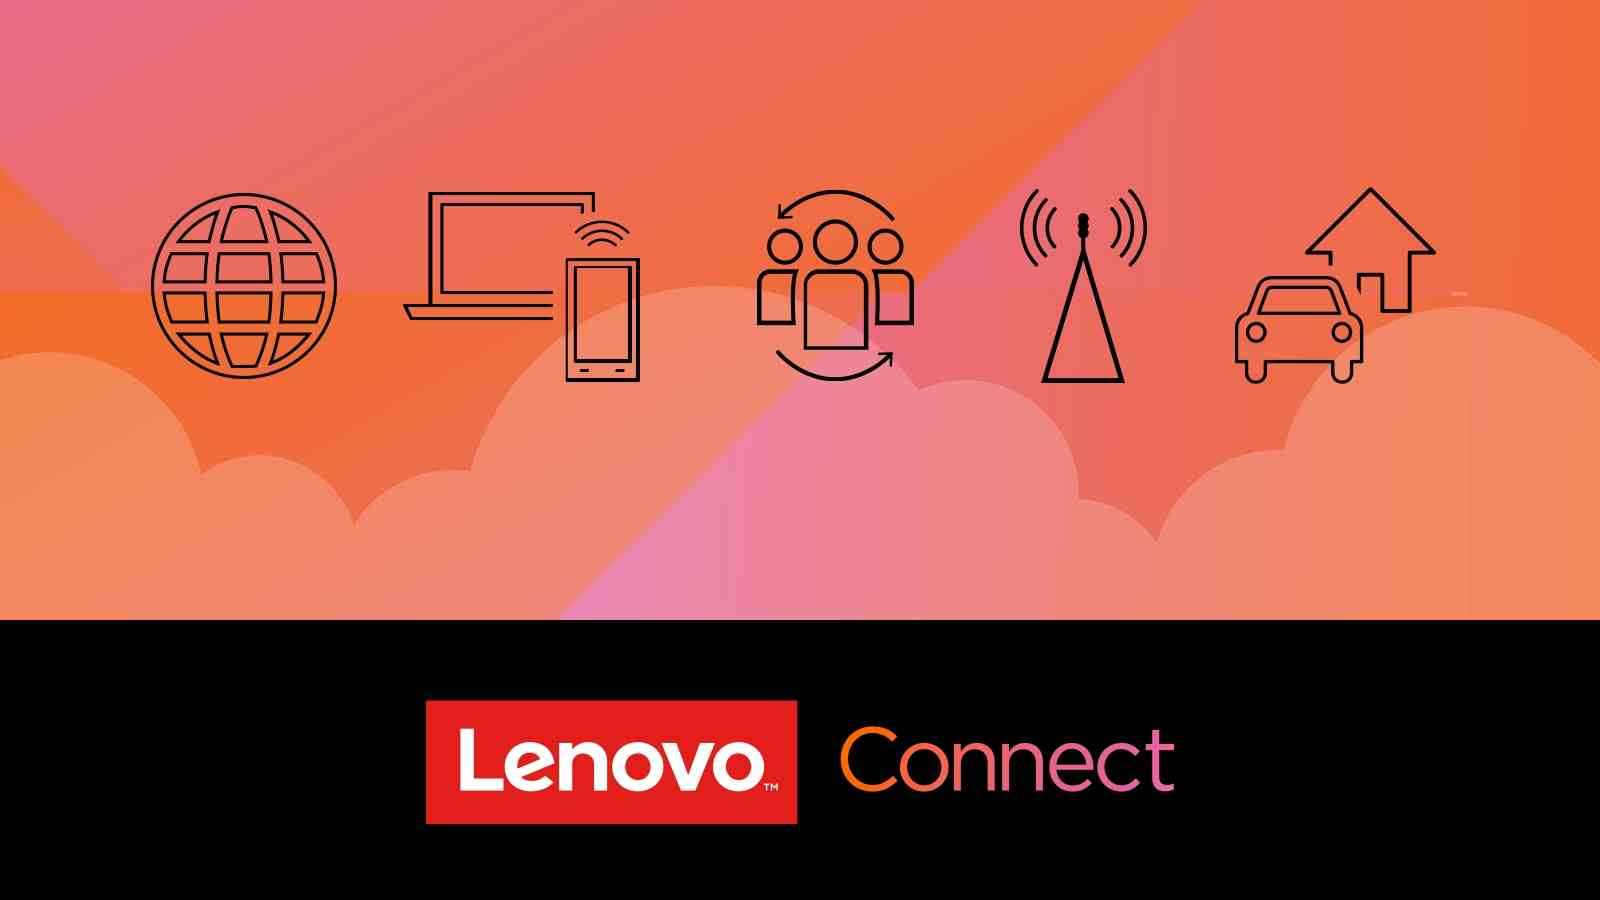 Lenovo zostaje wirtualnym dostawcą mobilnego Internetu